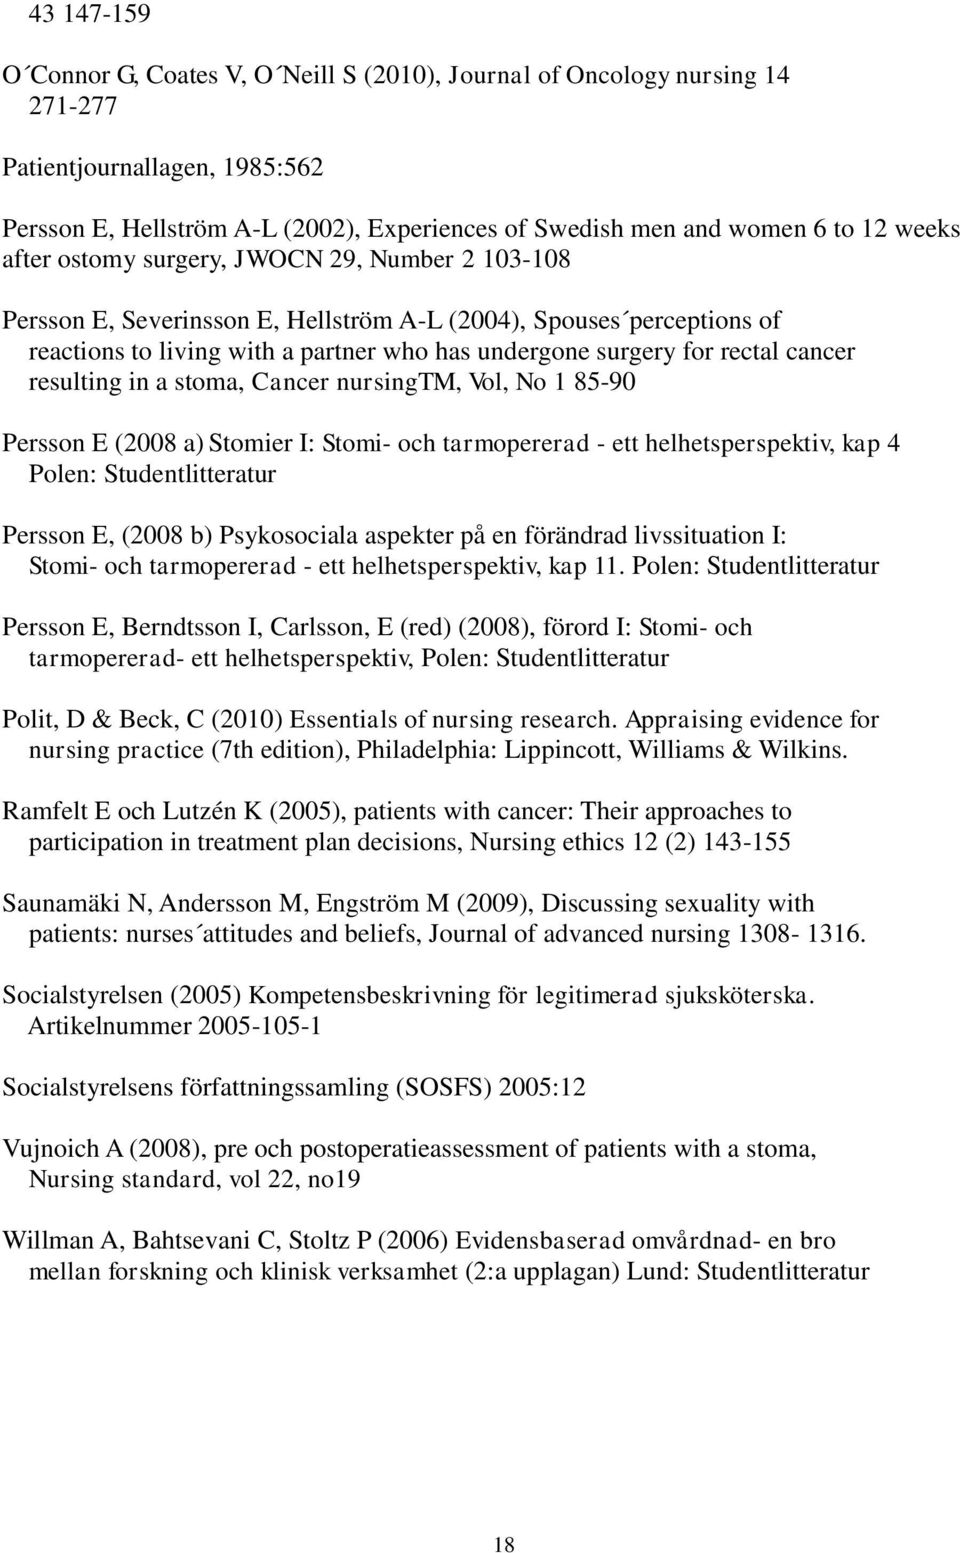 cancer resulting in a stoma, Cancer nursingtm, Vol, No 1 85-90 Persson E (2008 a) Stomier I: Stomi- och tarmopererad - ett helhetsperspektiv, kap 4 Polen: Studentlitteratur Persson E, (2008 b)